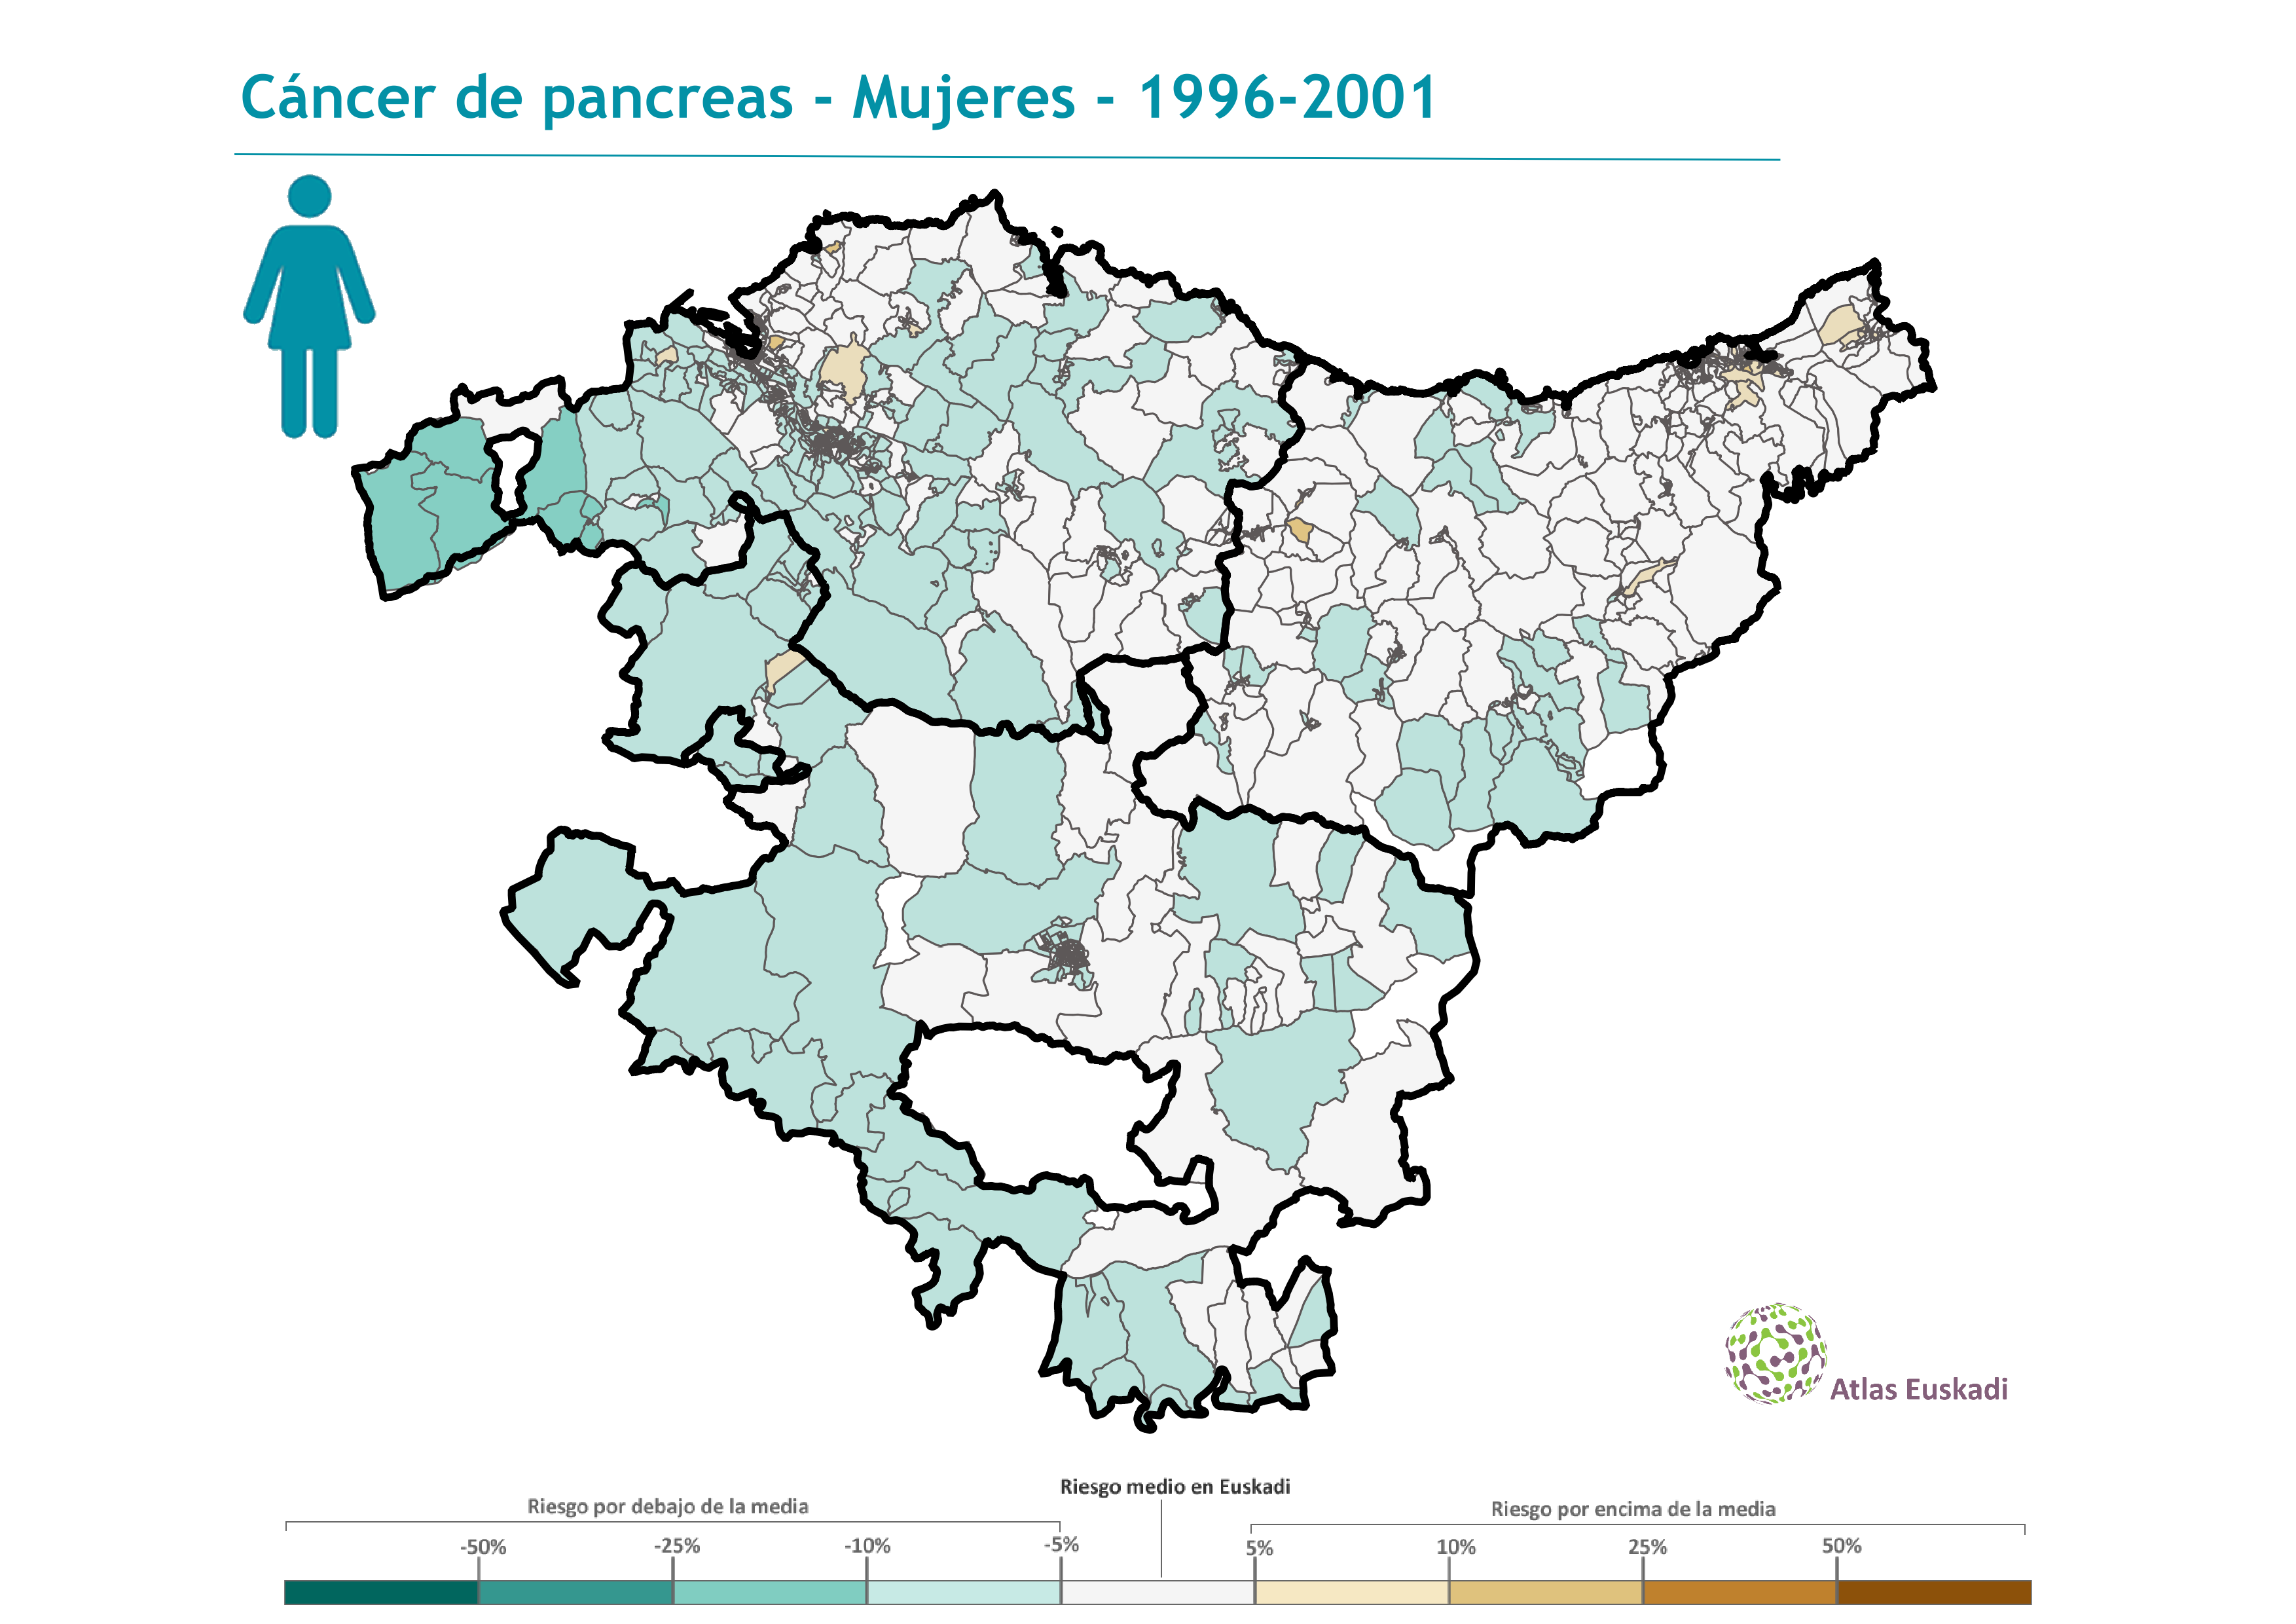 Cáncer de páncreas mujeres  1996-2001 Euskadi